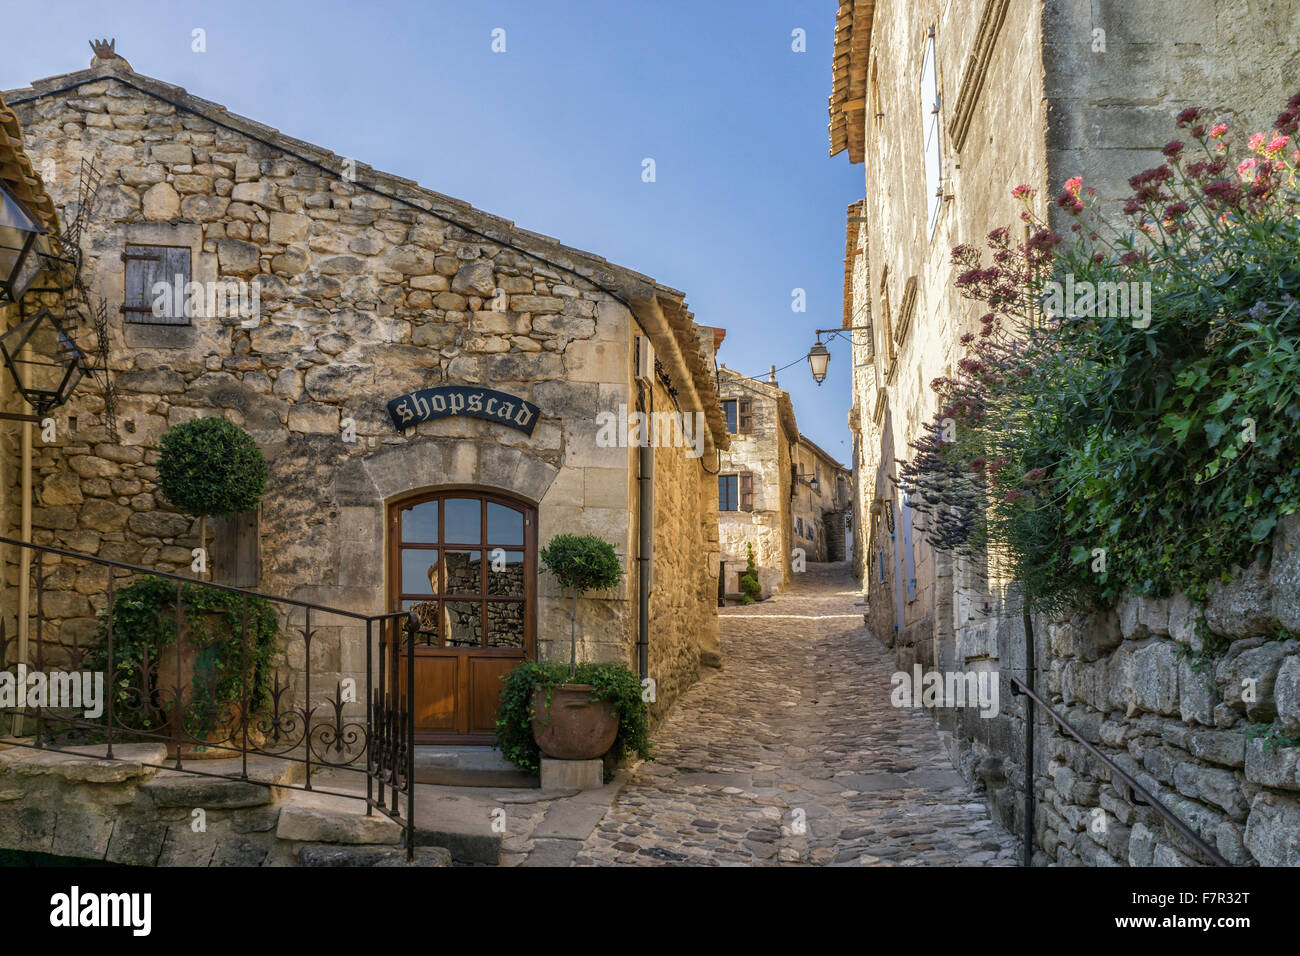 Village-rue dans Lacoste, Provence, France Banque D'Images